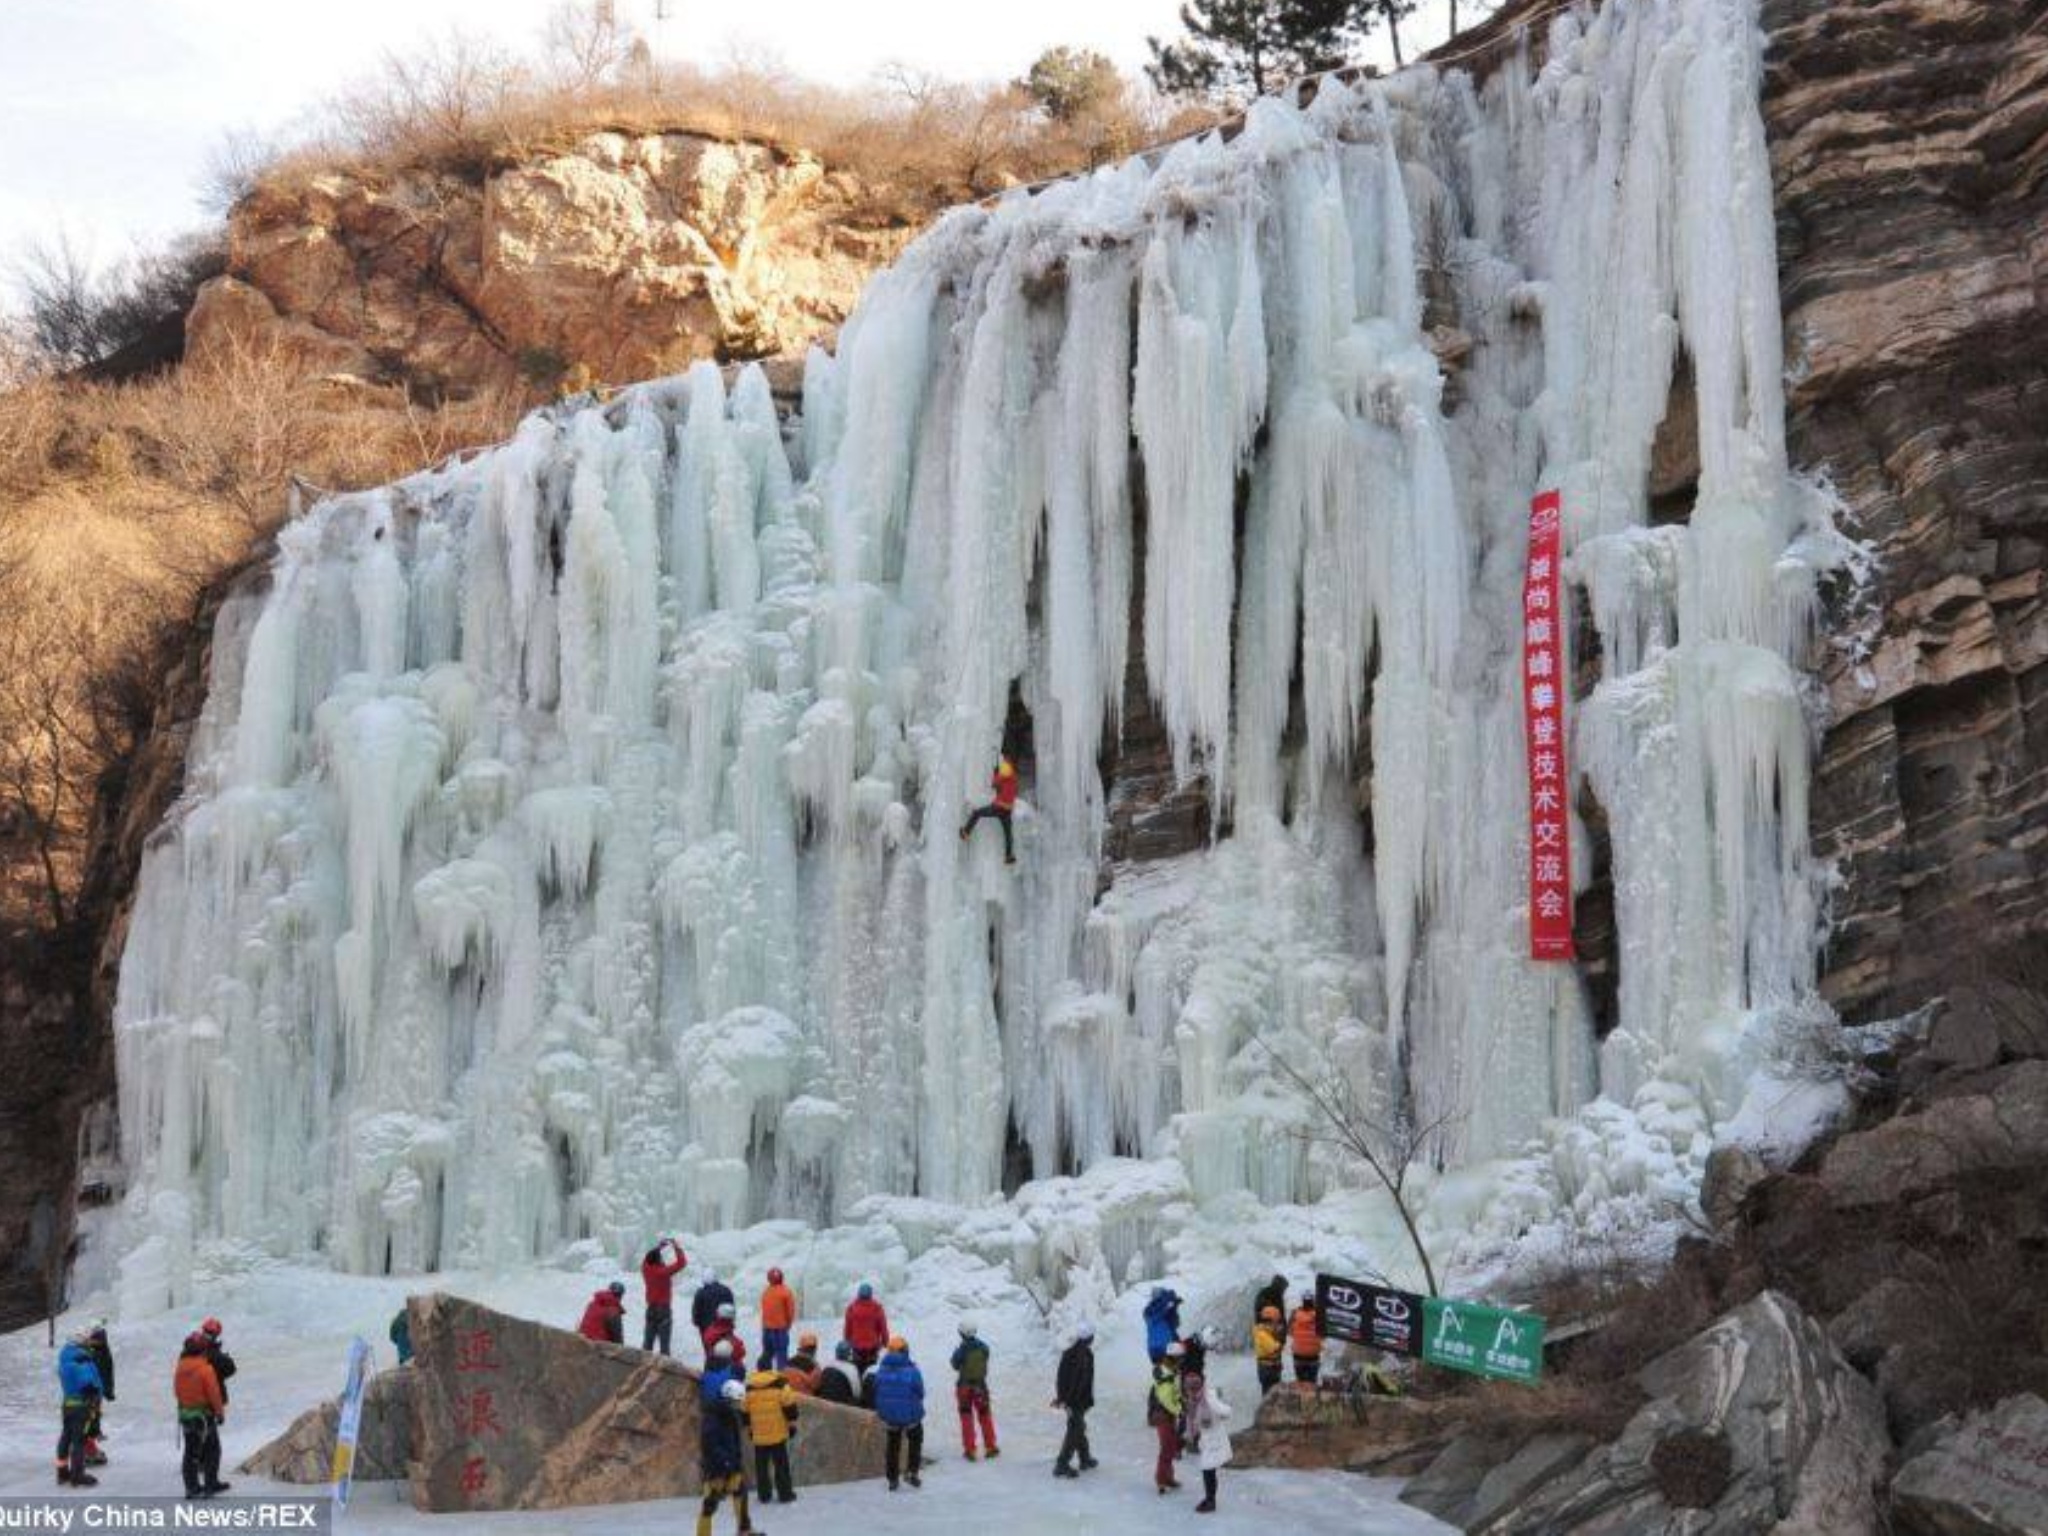 Thác nước đóng băng được xem là hiện tượng lạ ở Bắc Kinh, Trung Quốc